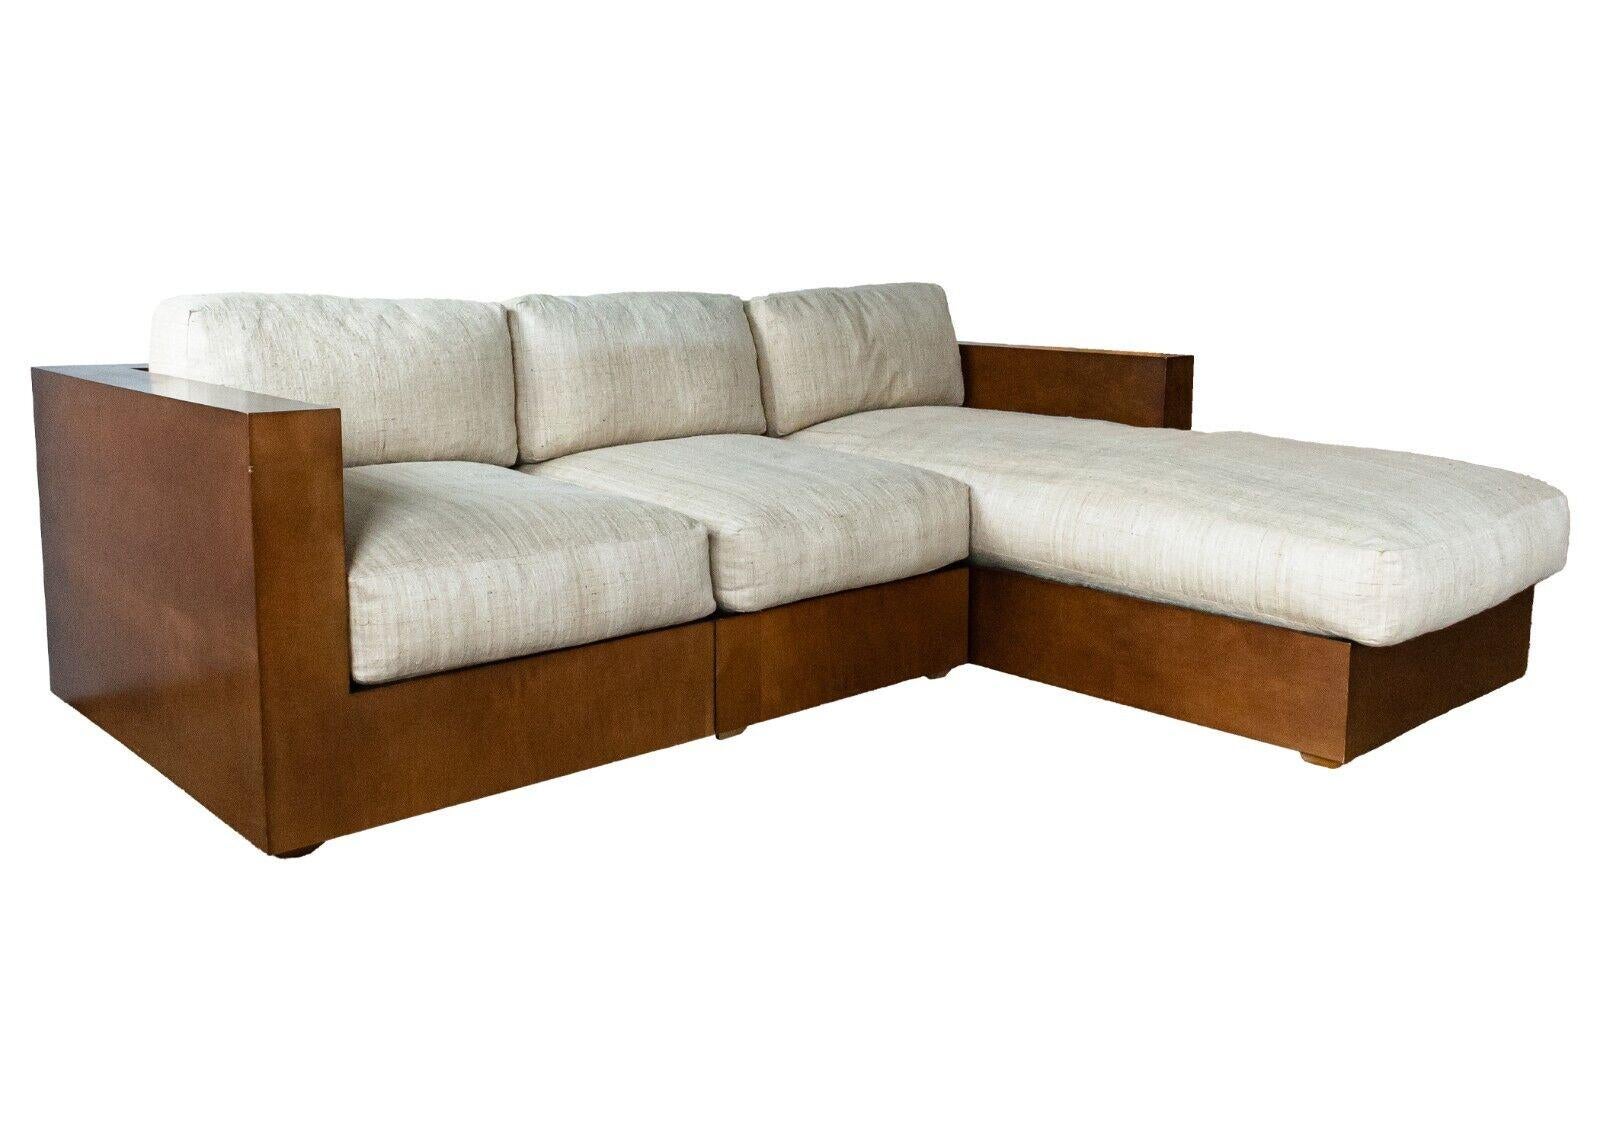 Un canapé sectionnel modulaire 3 pièces Ralph Lauren en bois de noyer. Un étonnant canapé de Ralph Lauren avec une construction en bois de noyer semi-brillant très propre et élégante. Ce sectionnel présente un design modulaire et personnalisable.